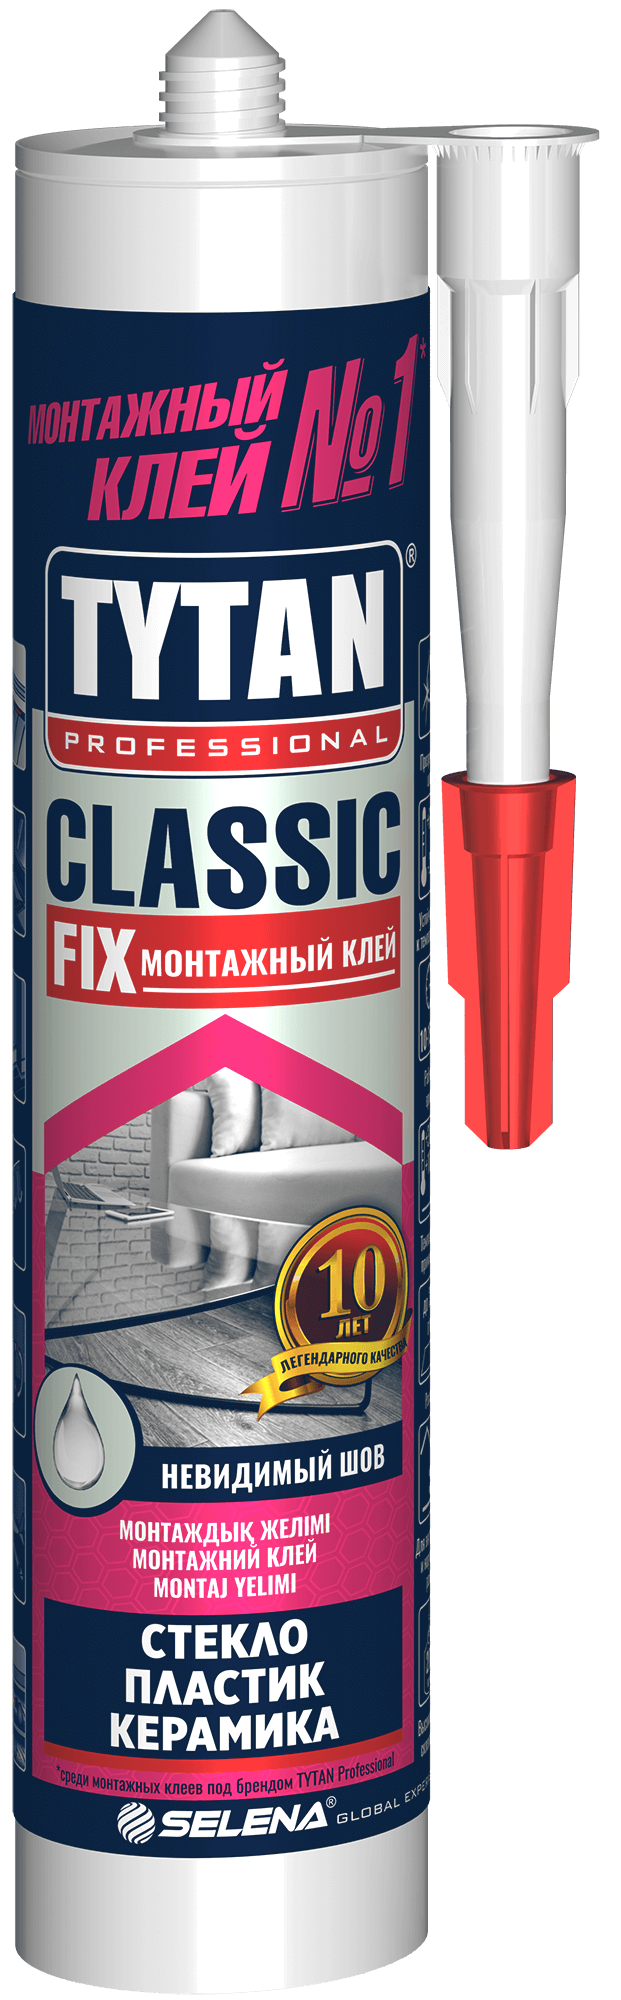 Монтажный Клей CLASSIC FIX - Tytan Professional